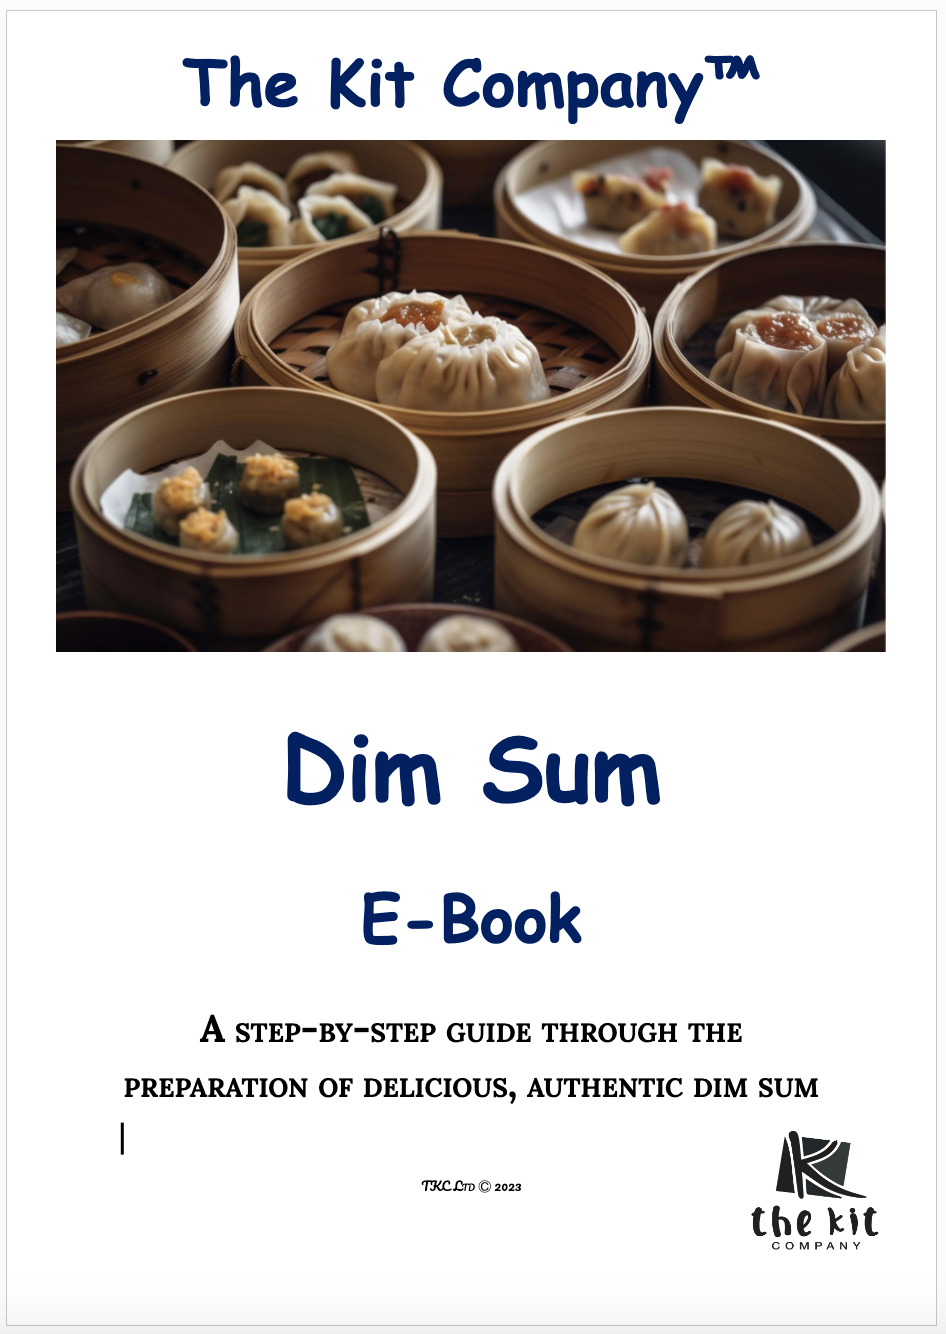 Livre électronique sur le kit de fabrication de dim sum - anglais